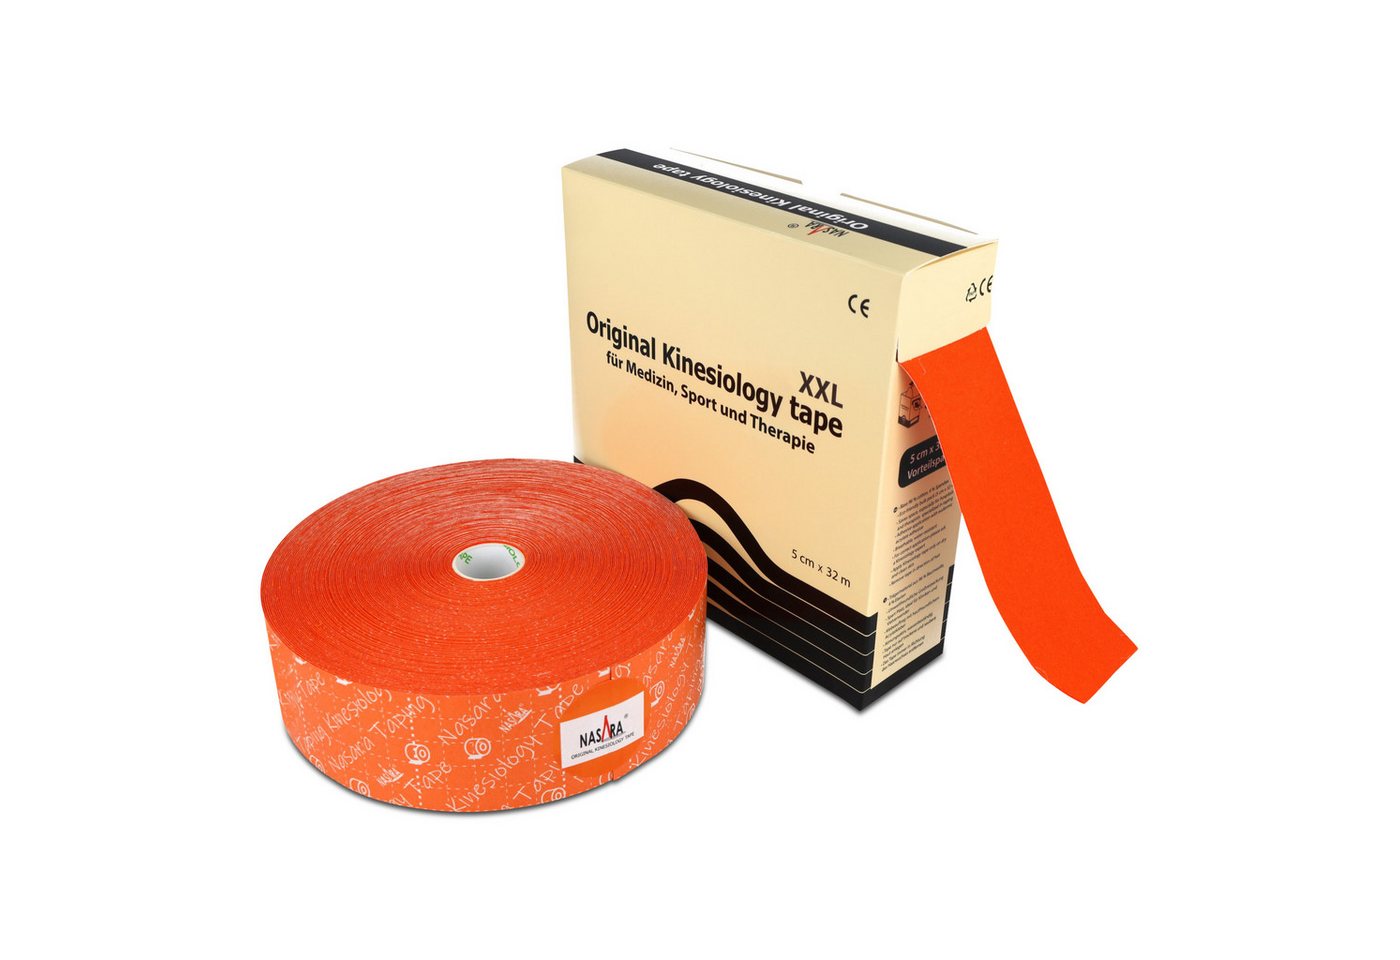 NASARA Kinesiologie-Tape NASARA Kinesiologie Tape 5cm x 32m - orange von NASARA